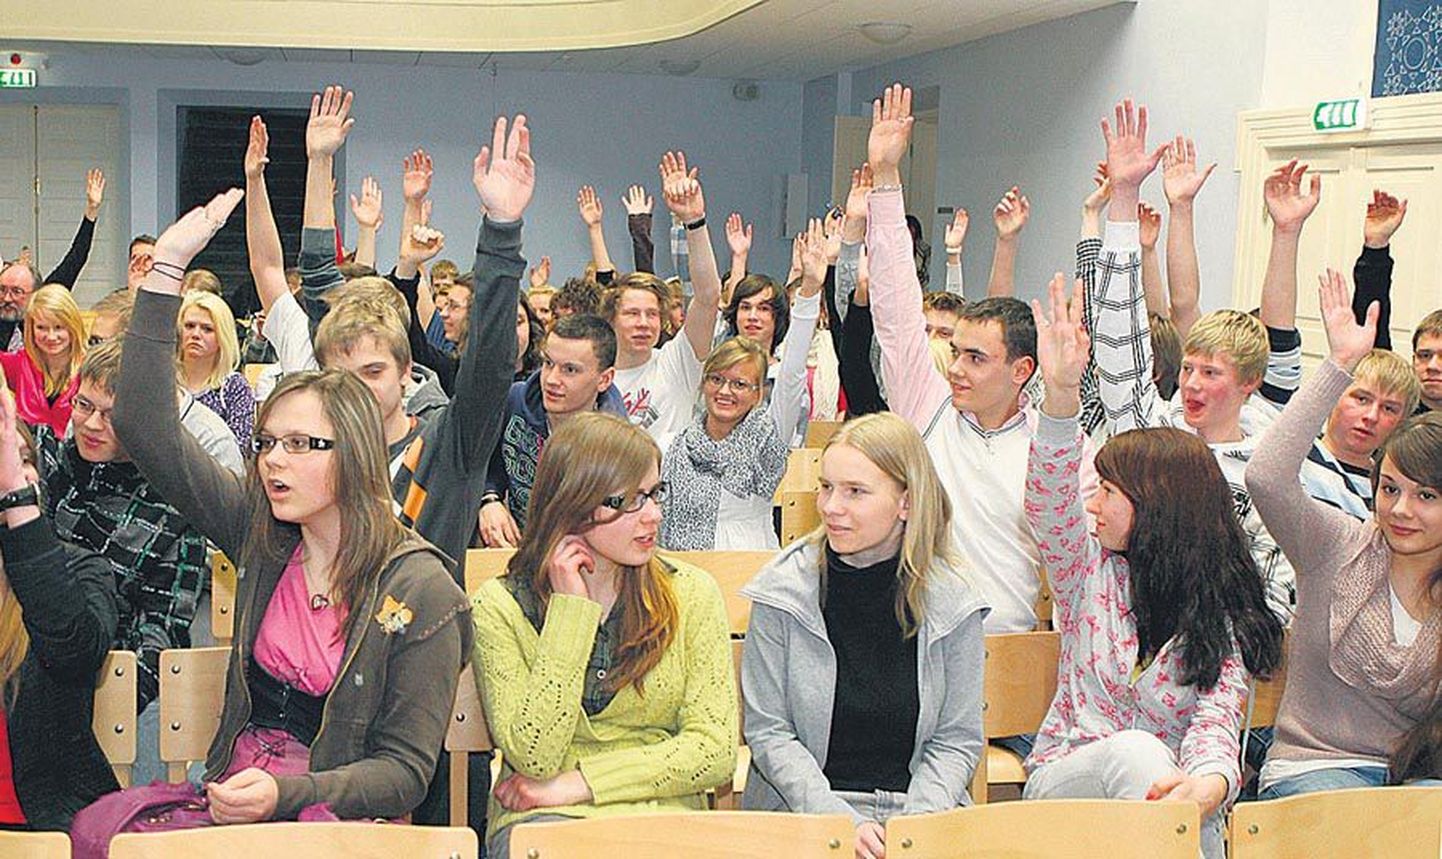 Esmaspäeval maagümnaasiumis korraldatud näitehääletusel vastas enamik kohaletulnutest Viljandisse ühisgümnaasiumi loomisele eitavalt.